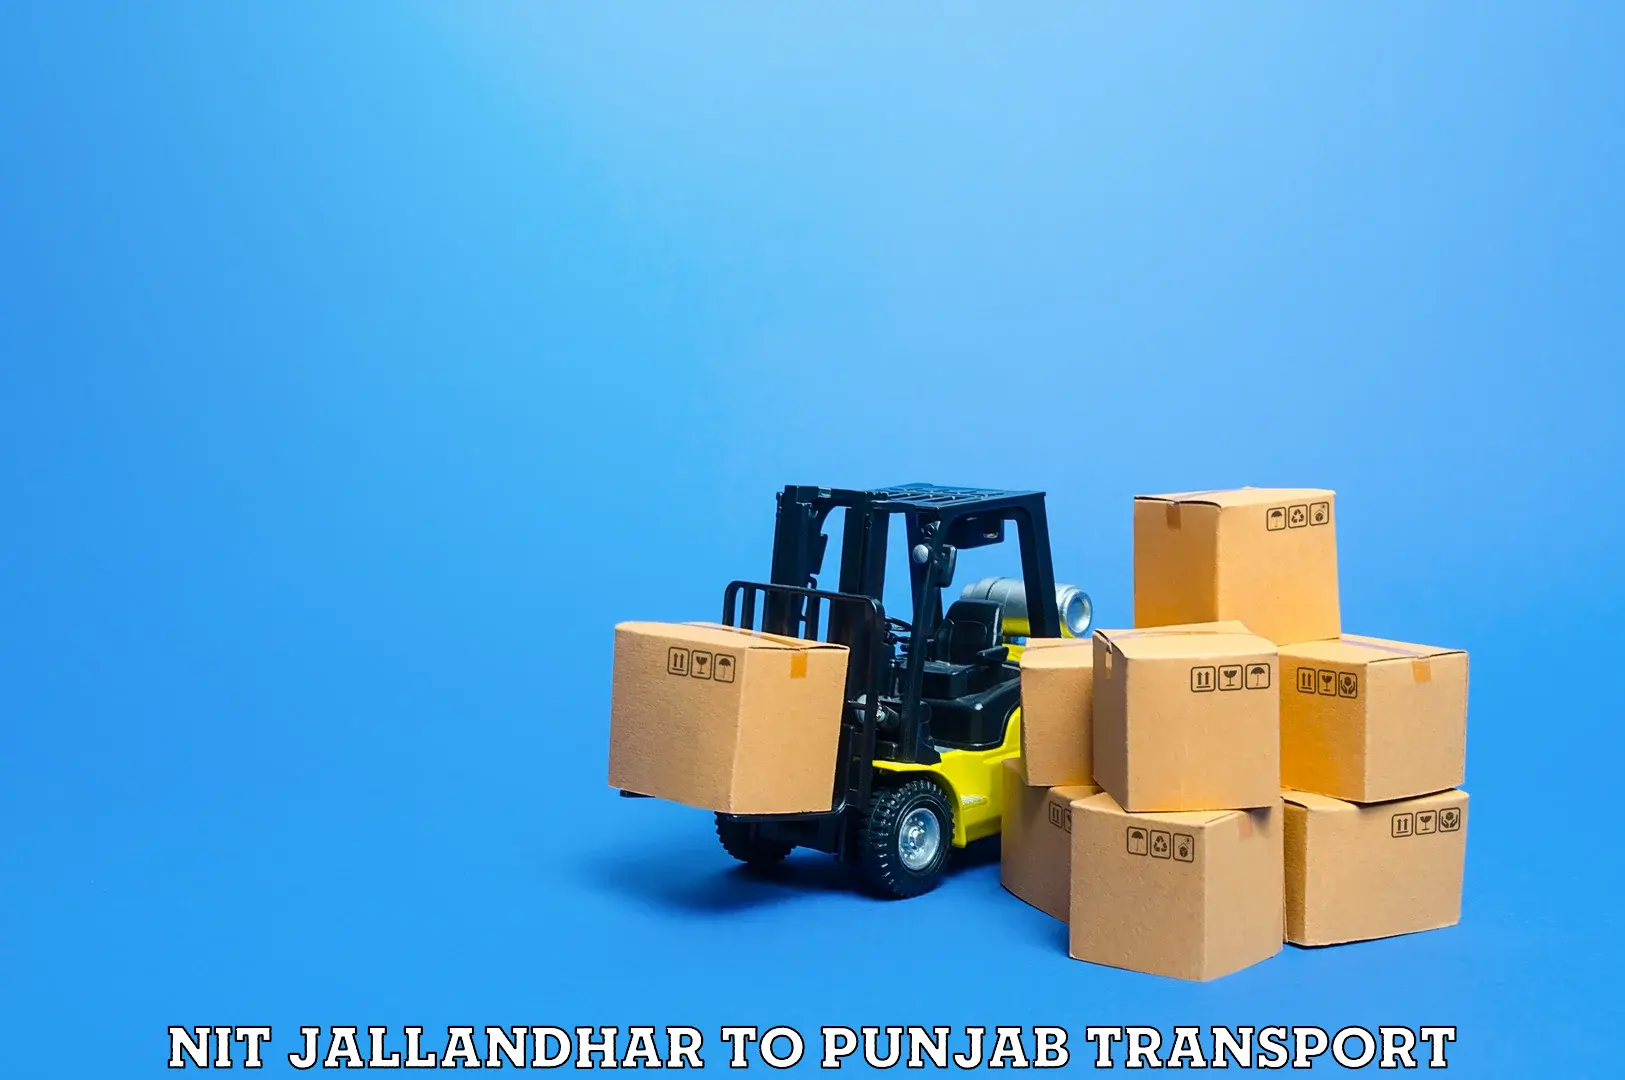 Nearby transport service NIT Jallandhar to Gurdaspur